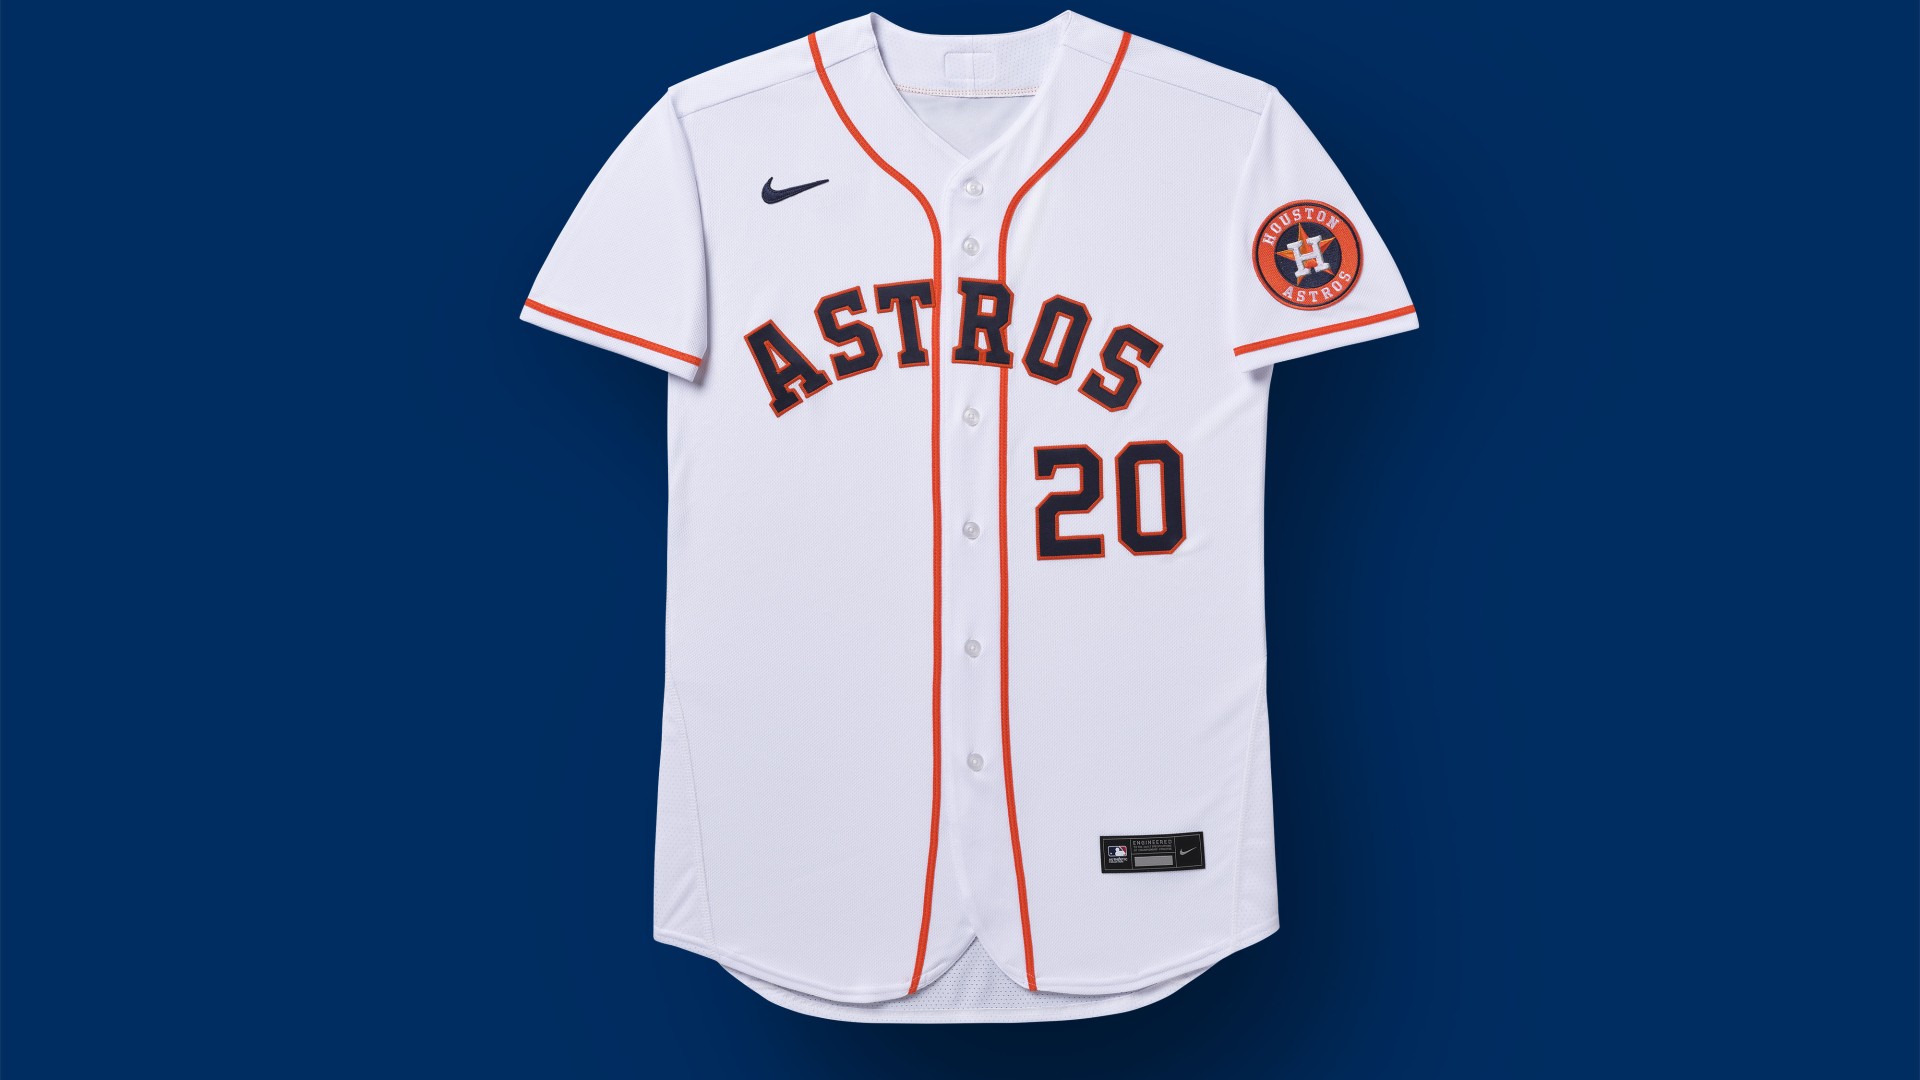 astros 2019 uniforms